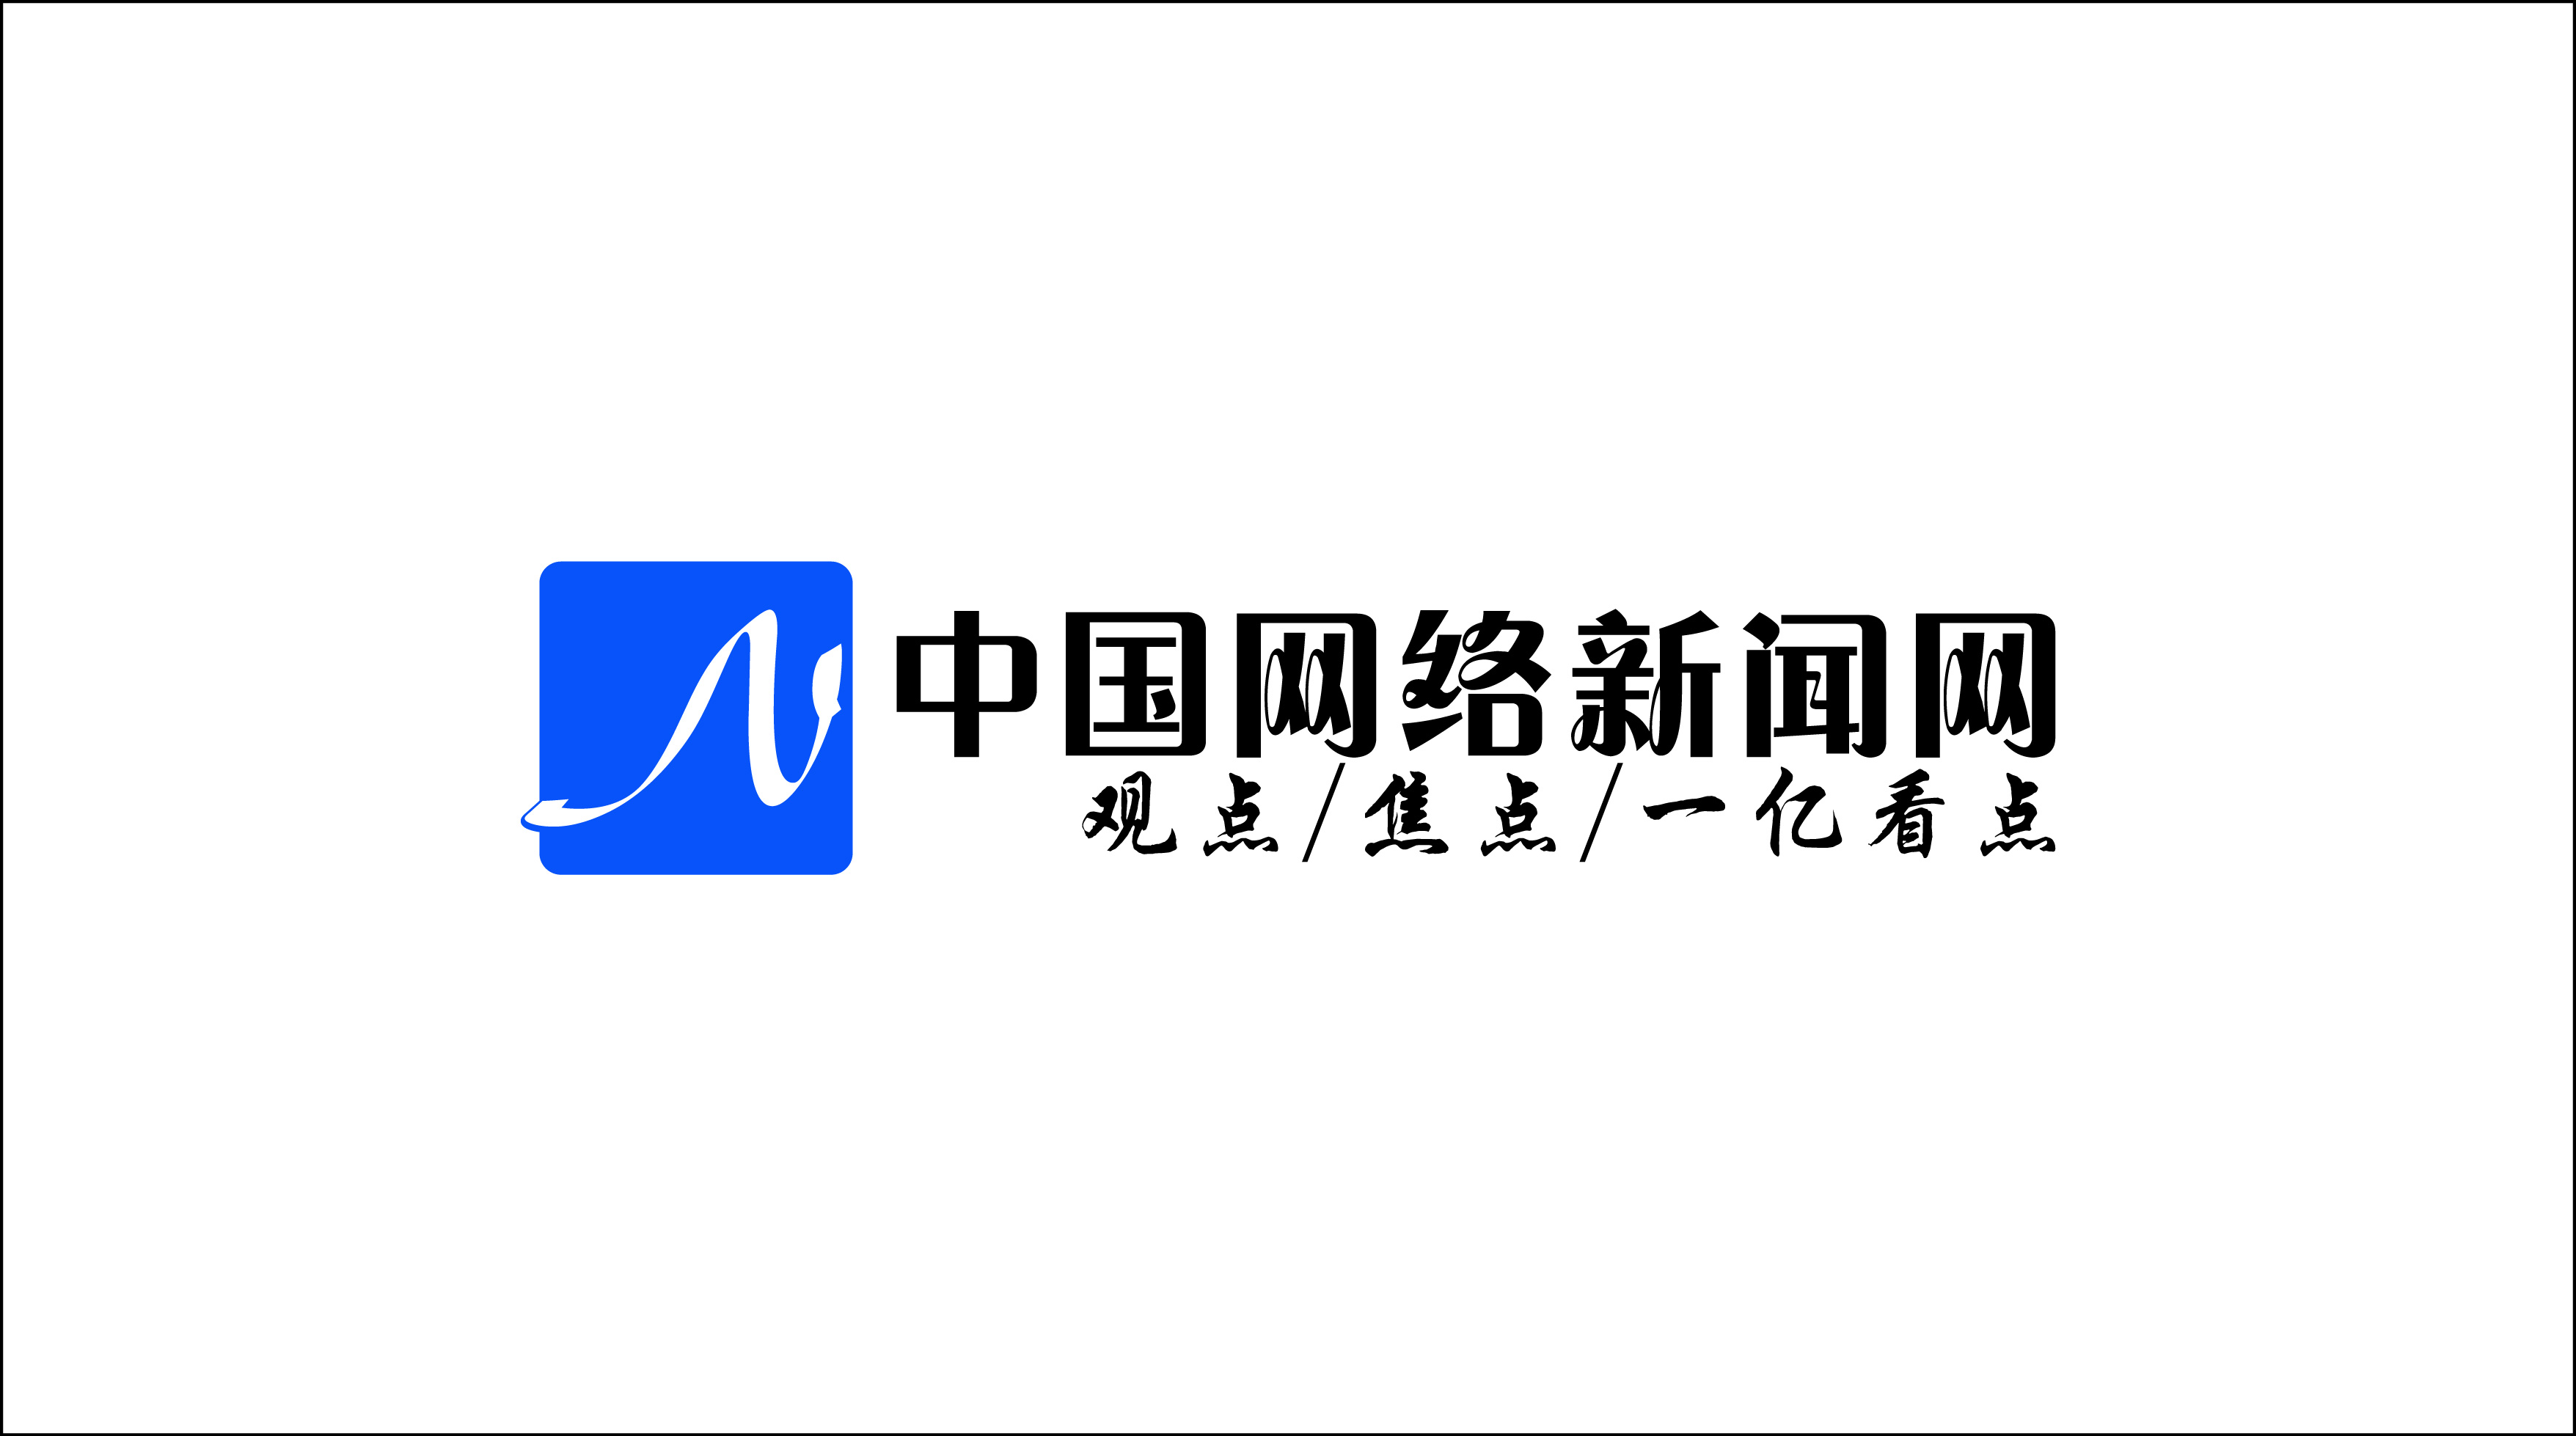 新闻网站logo设计